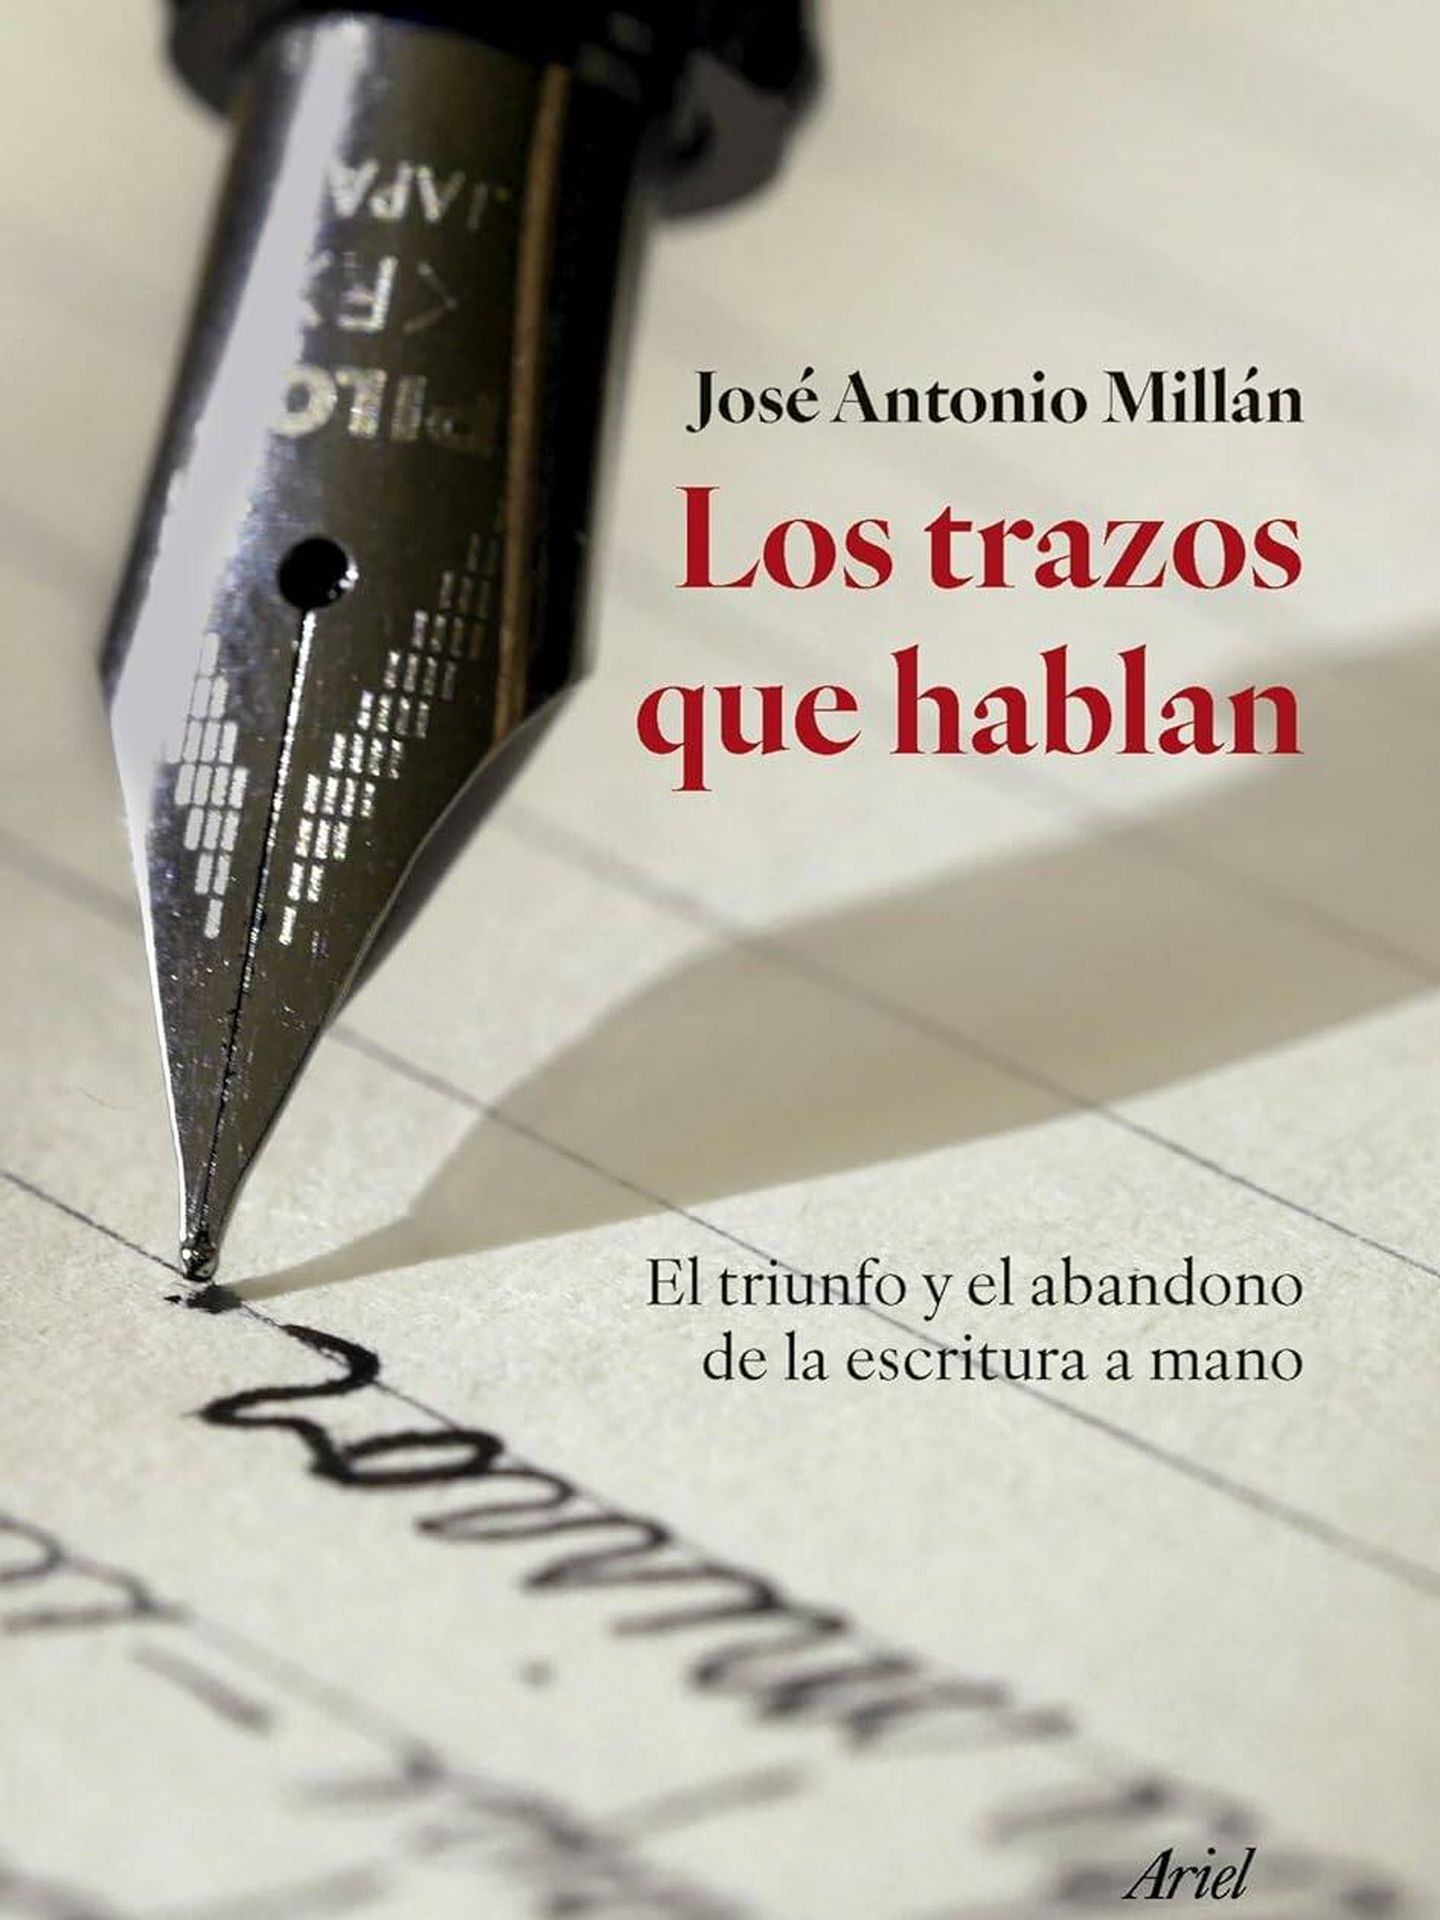 Portada de 'Los trazos que hablan', del lingüista José Antonio Millán. 